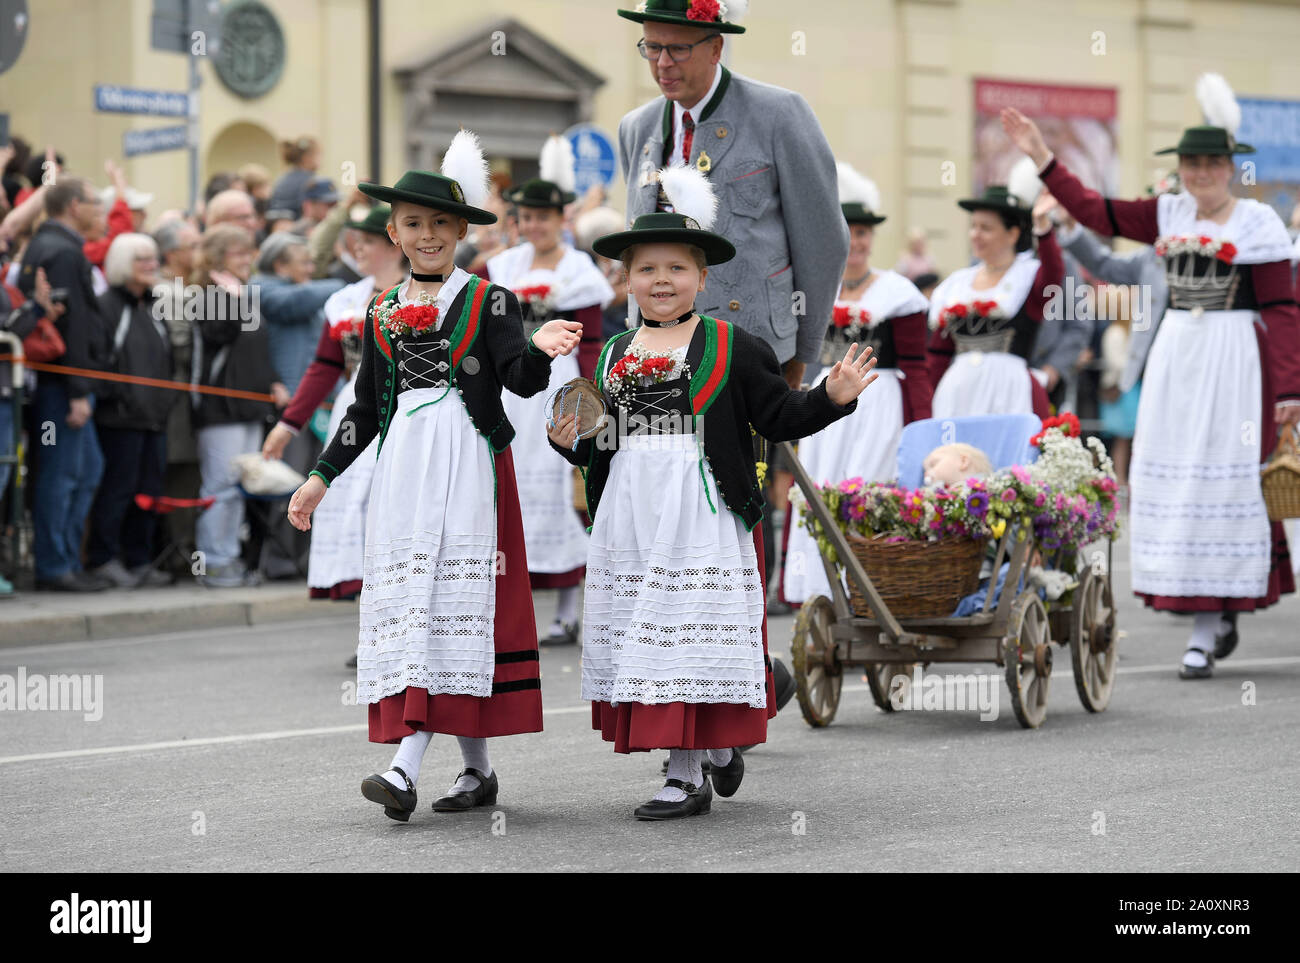 Munich, Allemagne. 22 Sep, 2019. Les gens participent à la parade de l'Oktoberfest à Munich, Allemagne, du 22 septembre 2019. Cette année, l'Oktoberfest va du 21 septembre au 6 octobre. Crédit : Yang Lu/Xinhua/Alamy Live News Banque D'Images